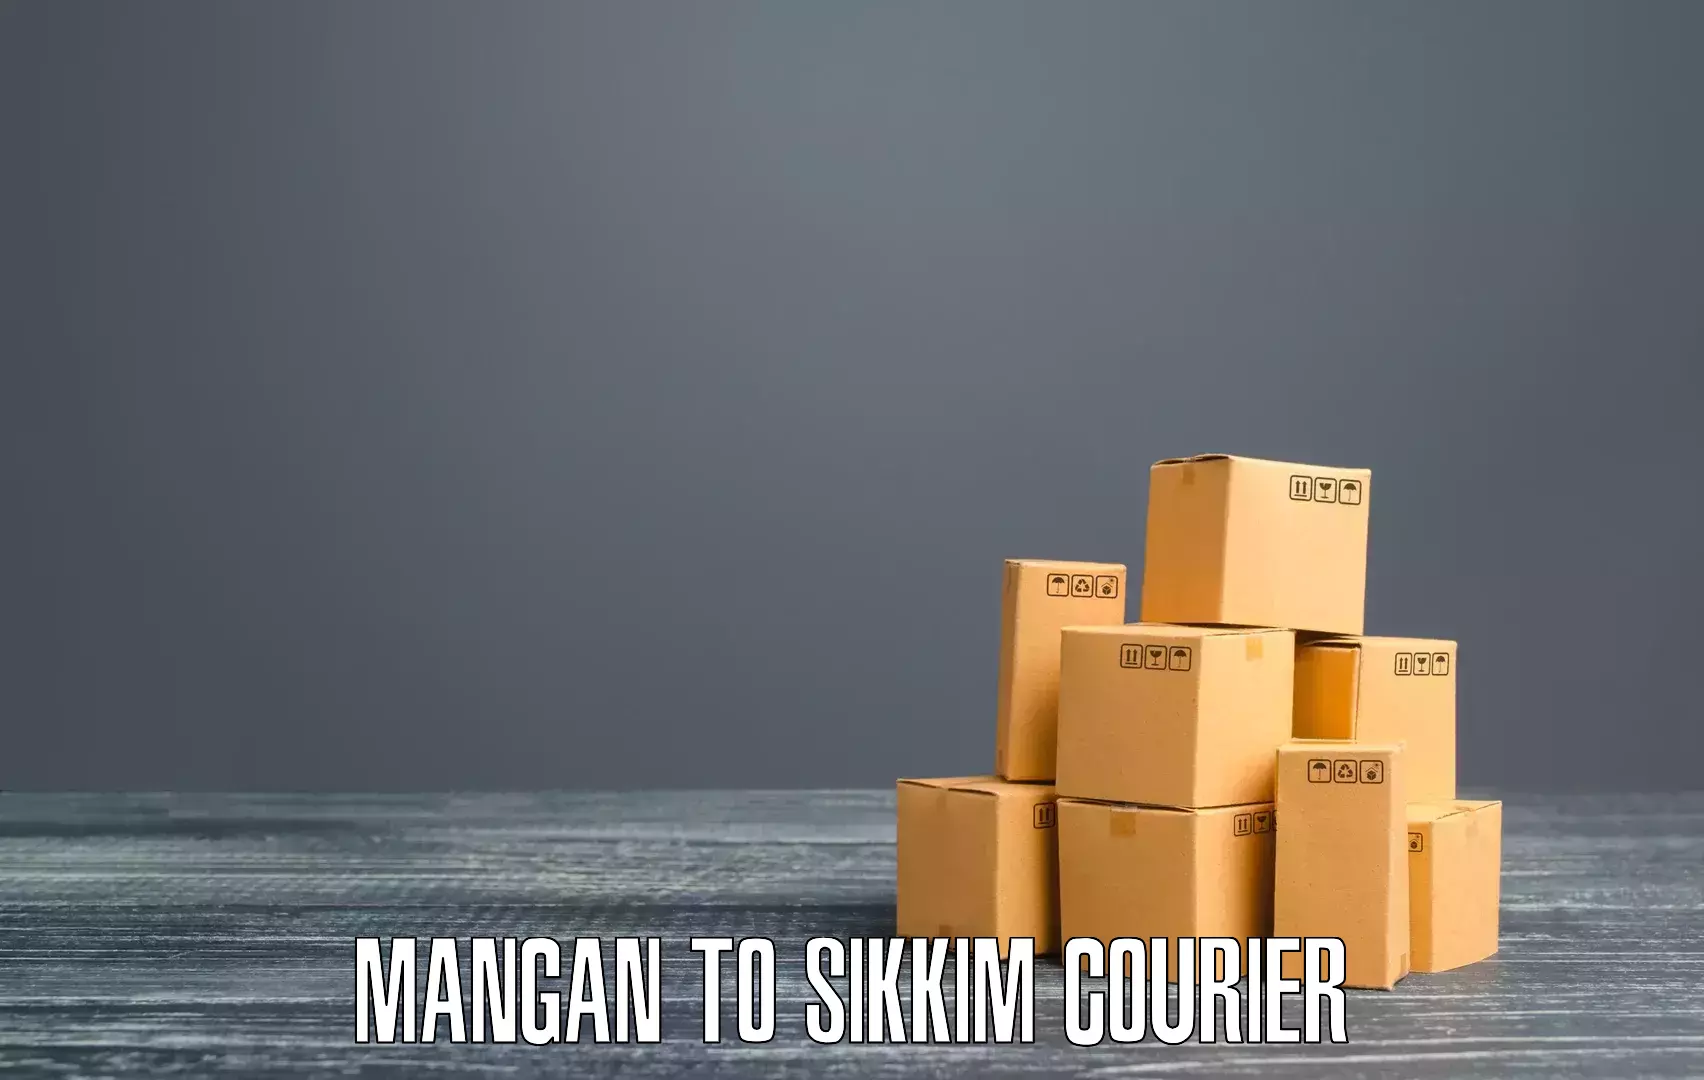 Efficient shipping operations Mangan to Rongli